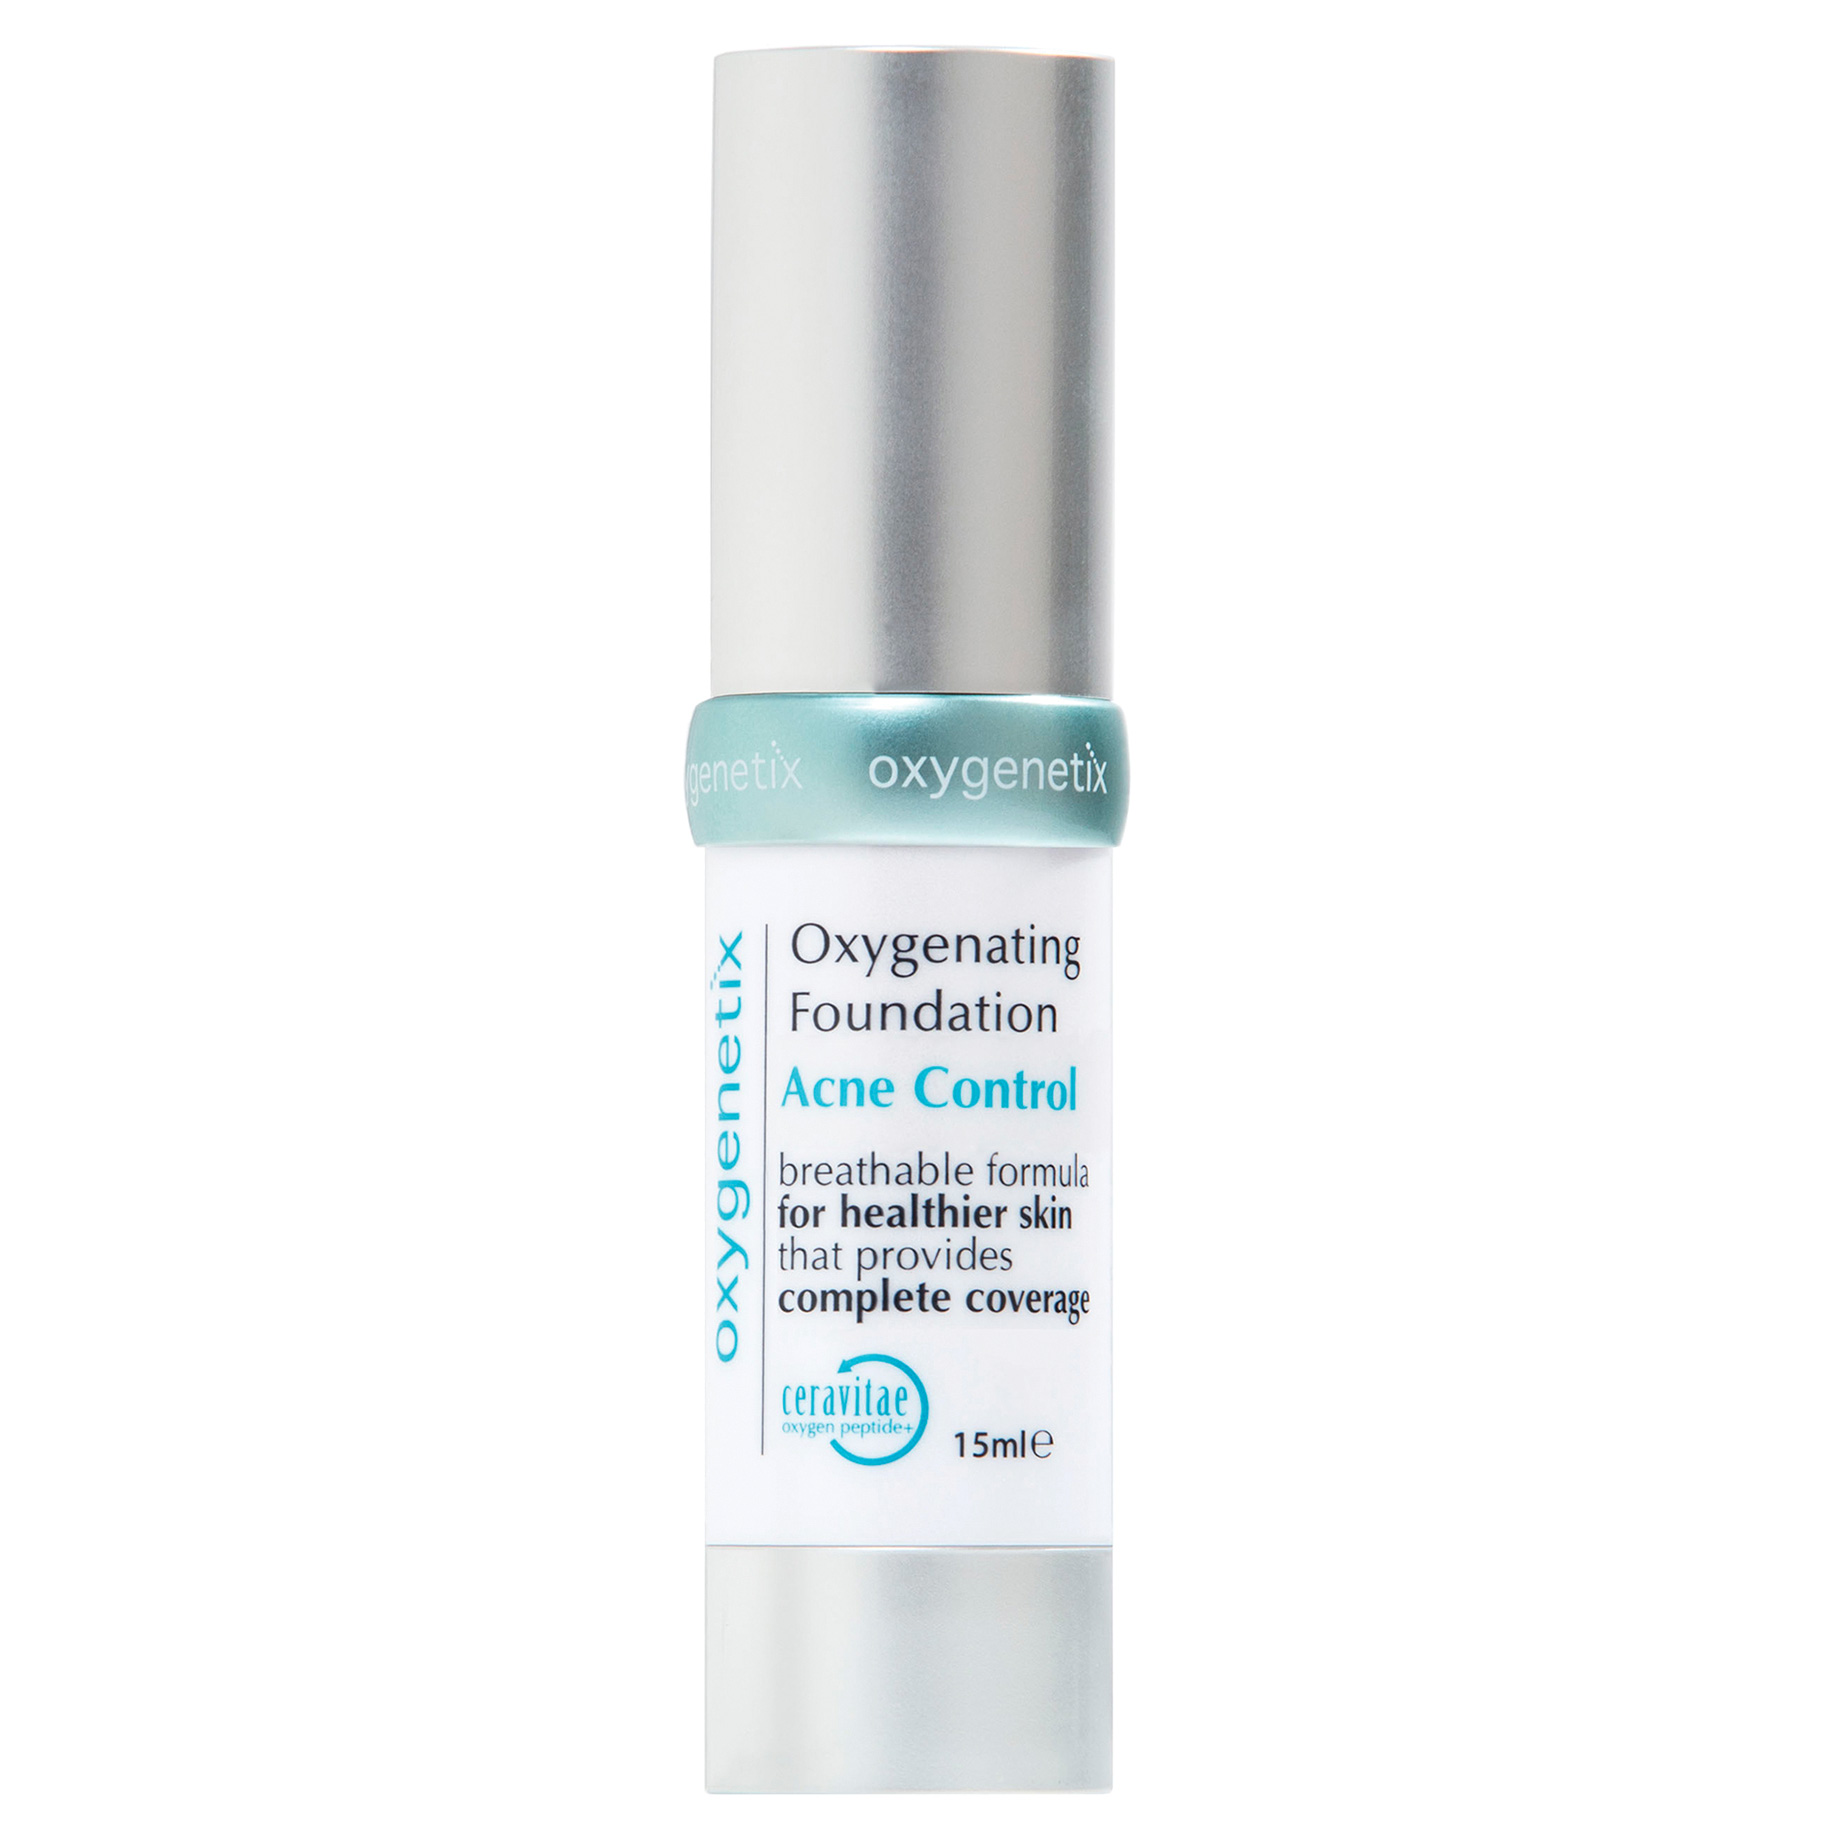 Oxygenetix Acne Control Foundation Creme 